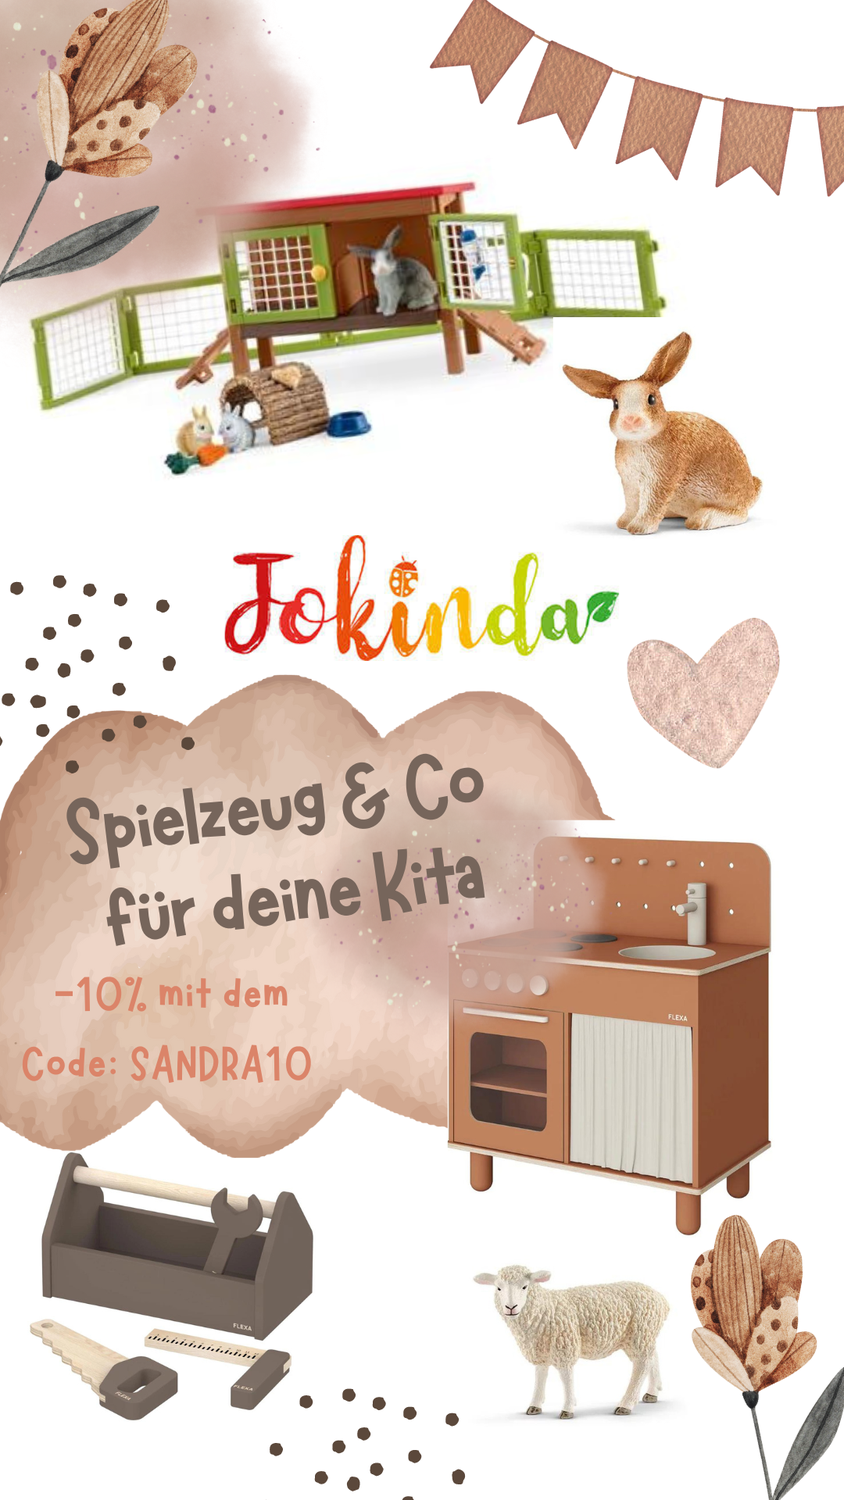 Jokinda- Spielzeug & Ausstattung für Kita & Krippe